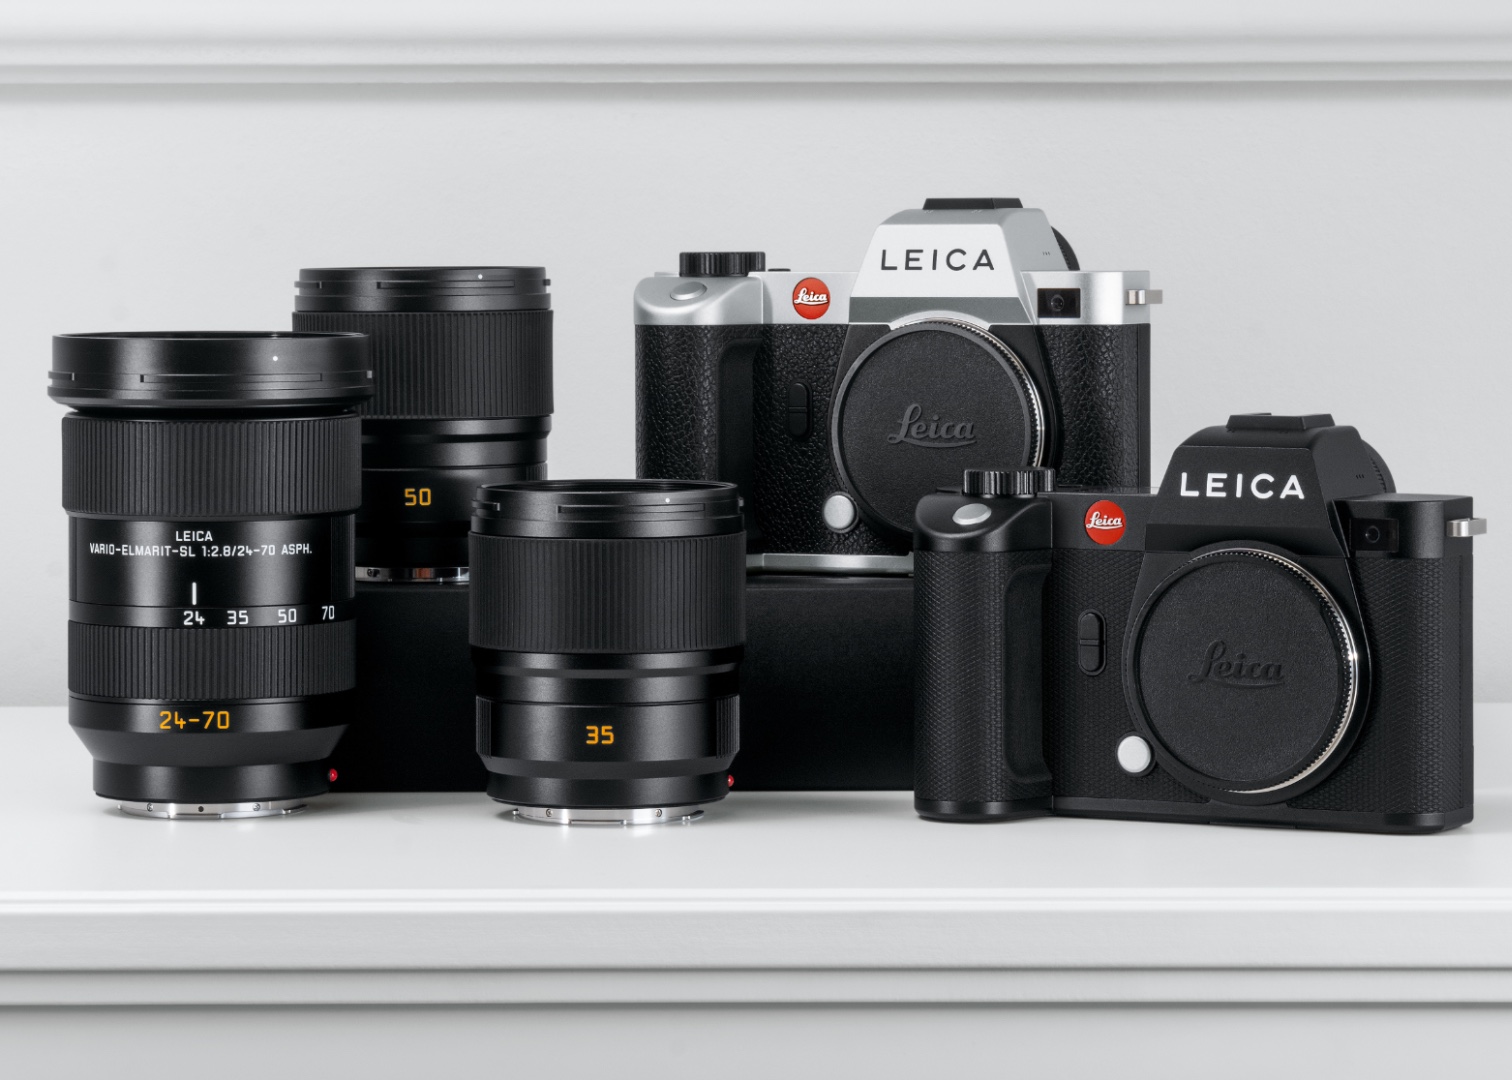 “Leica SL2 Bundle” voucher Promotion